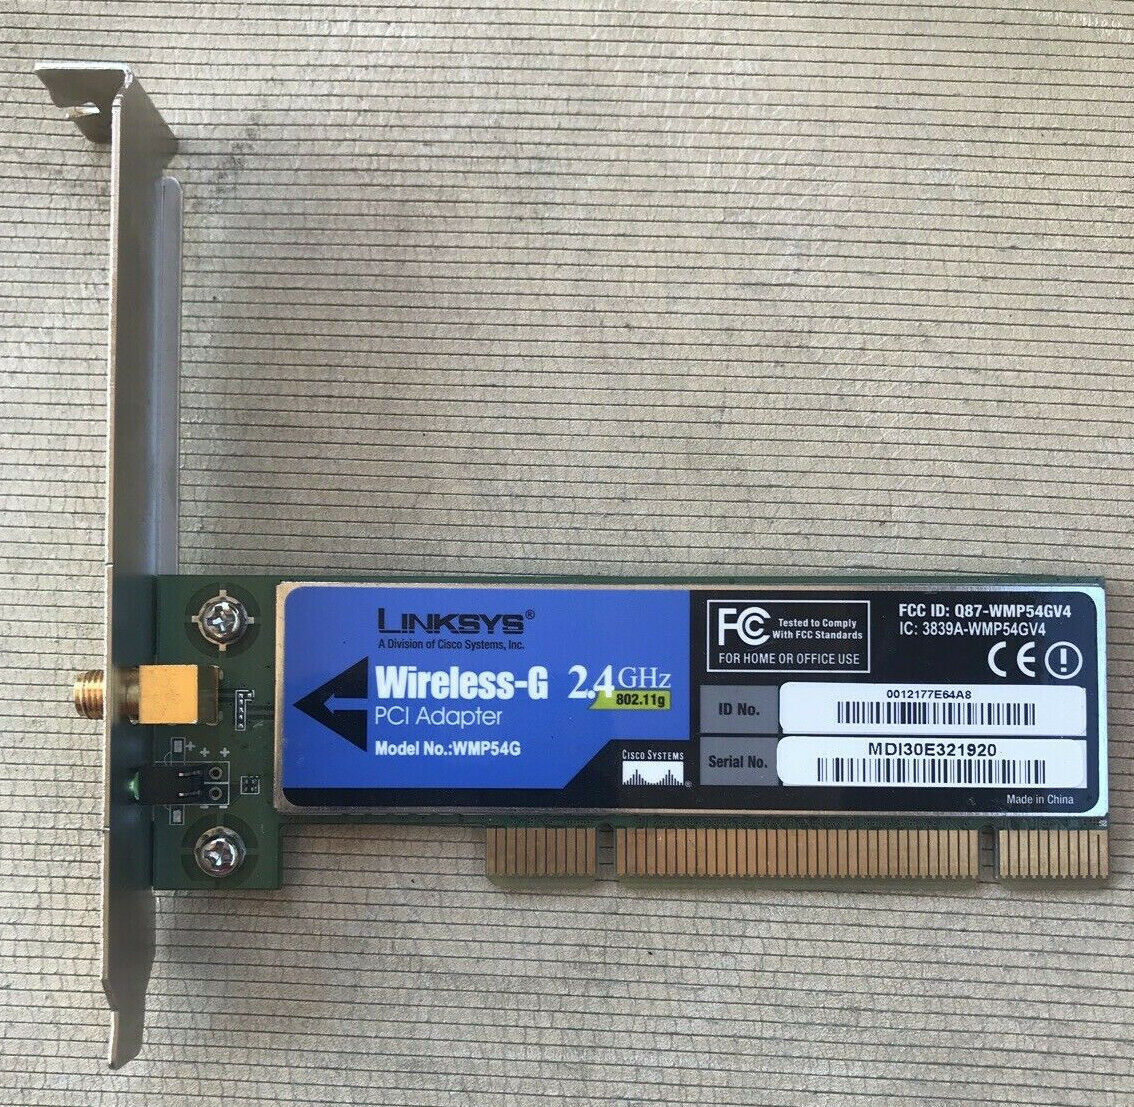 Cisco Linksys Wireless-G 2.4GHz 802.11g Computer PCI Network Adapter Card WMP54G